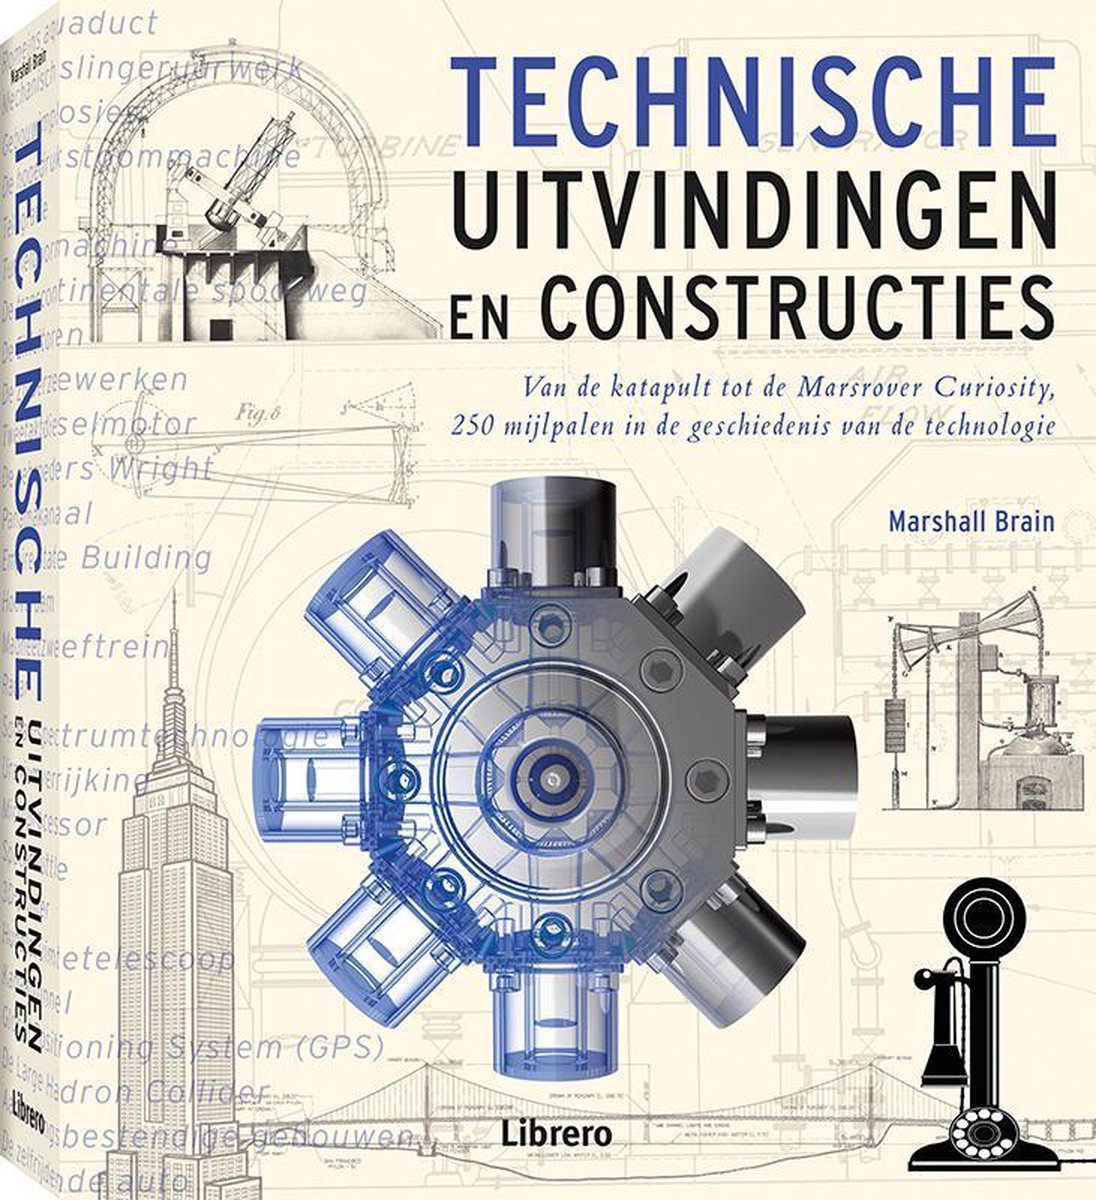 Technische uitvindingen en constructies